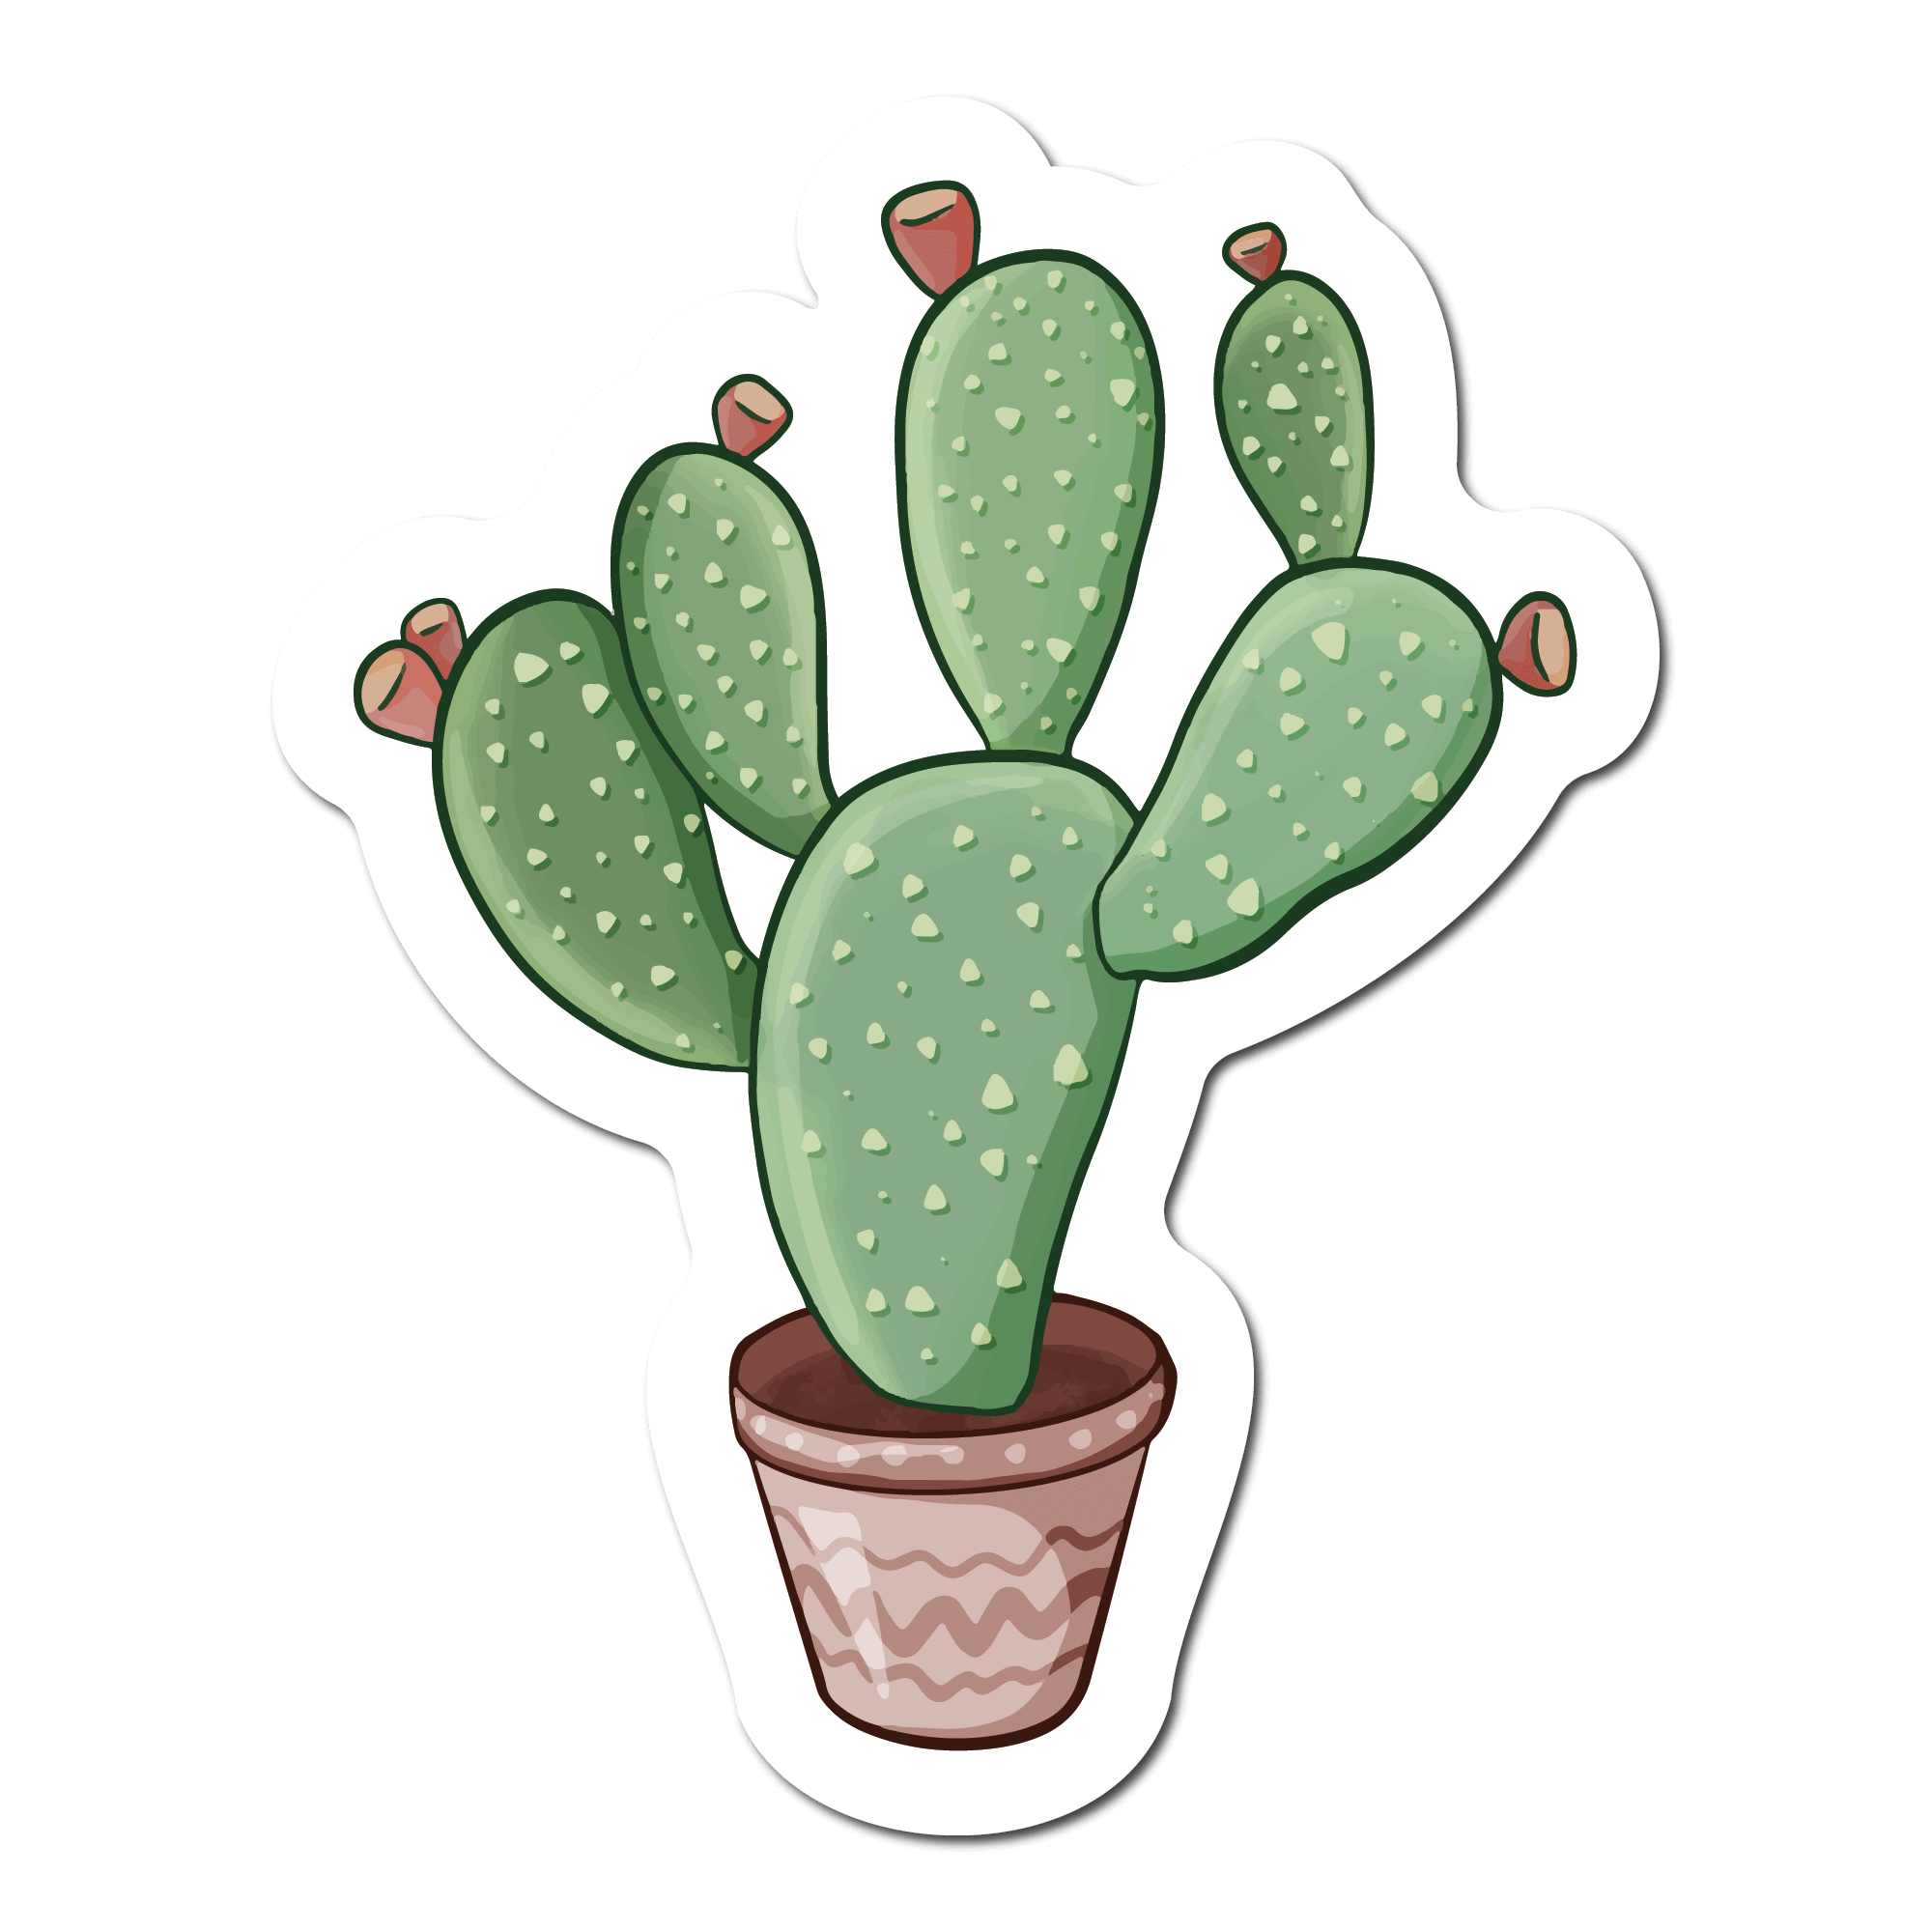 Cactus Pot PNG Image, Cute Green Cactus Cartoon With Pot, Cactus